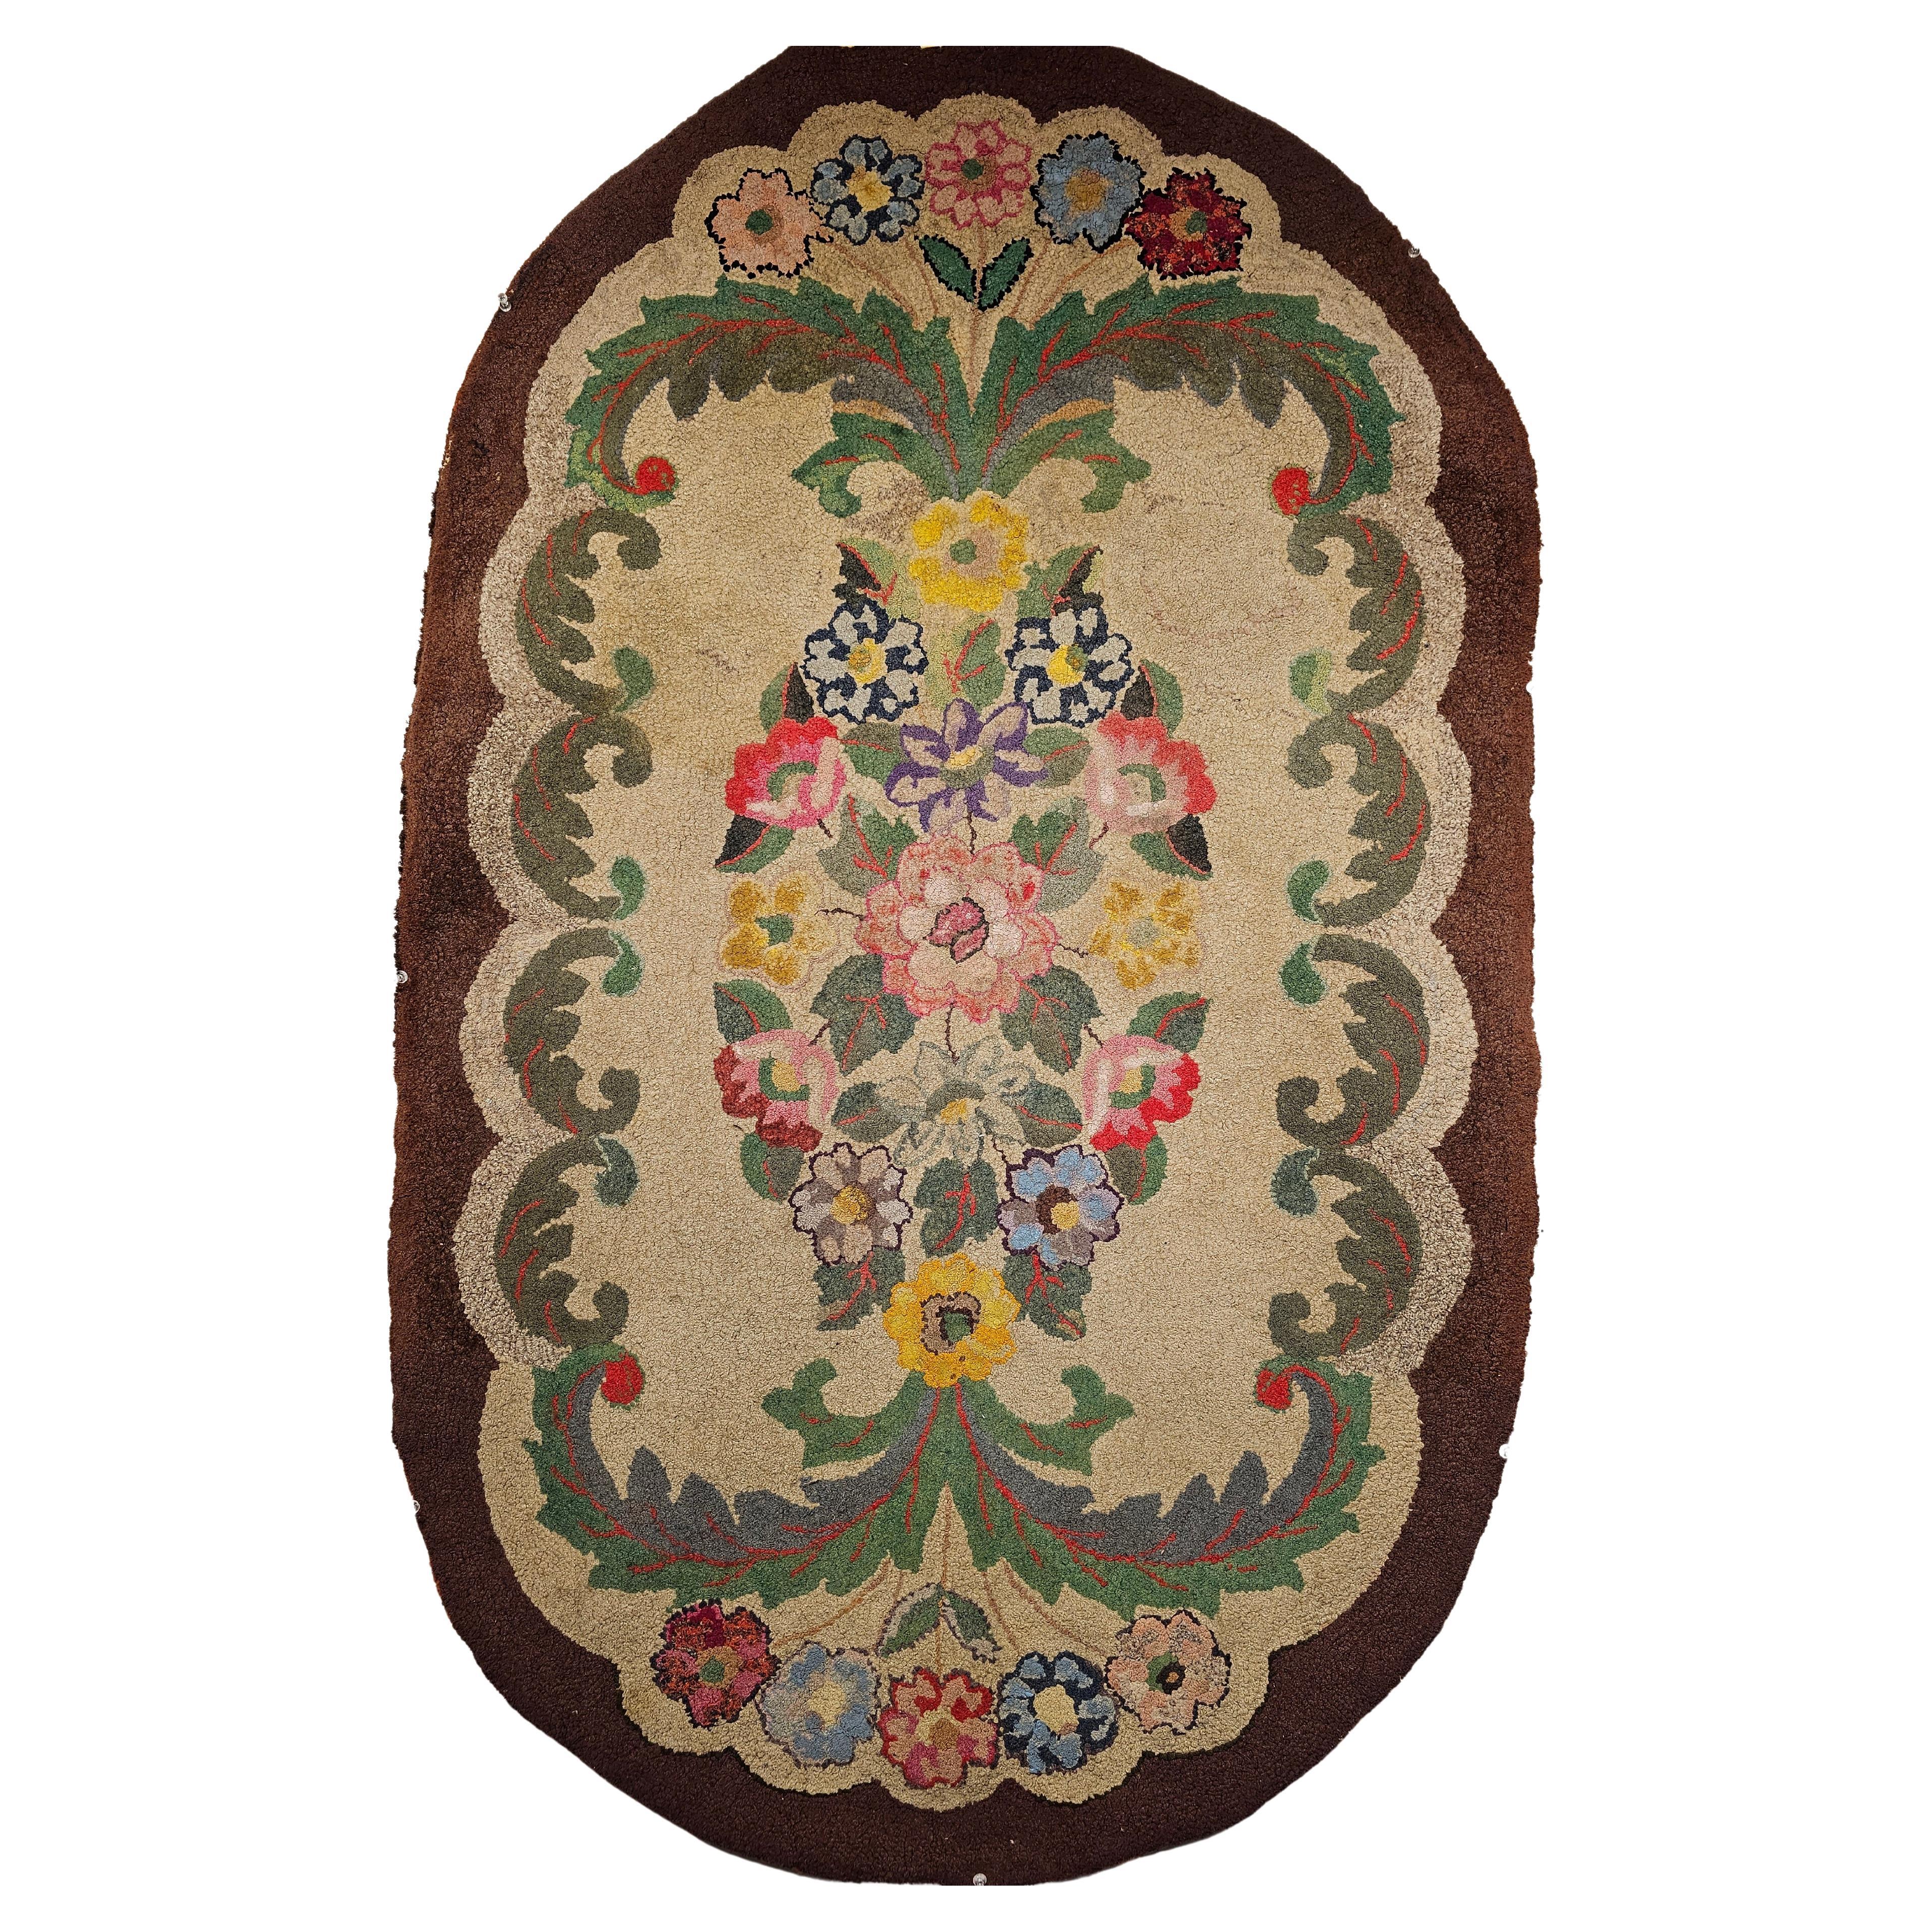 Ce tapis vintage américain crocheté à la main a été fabriqué au début des années 1900 dans la région de la Nouvelle-Angleterre aux États-Unis.  Il présente un motif floral avec des fleurs dans des couleurs vintage brillantes, notamment l'ivoire, le